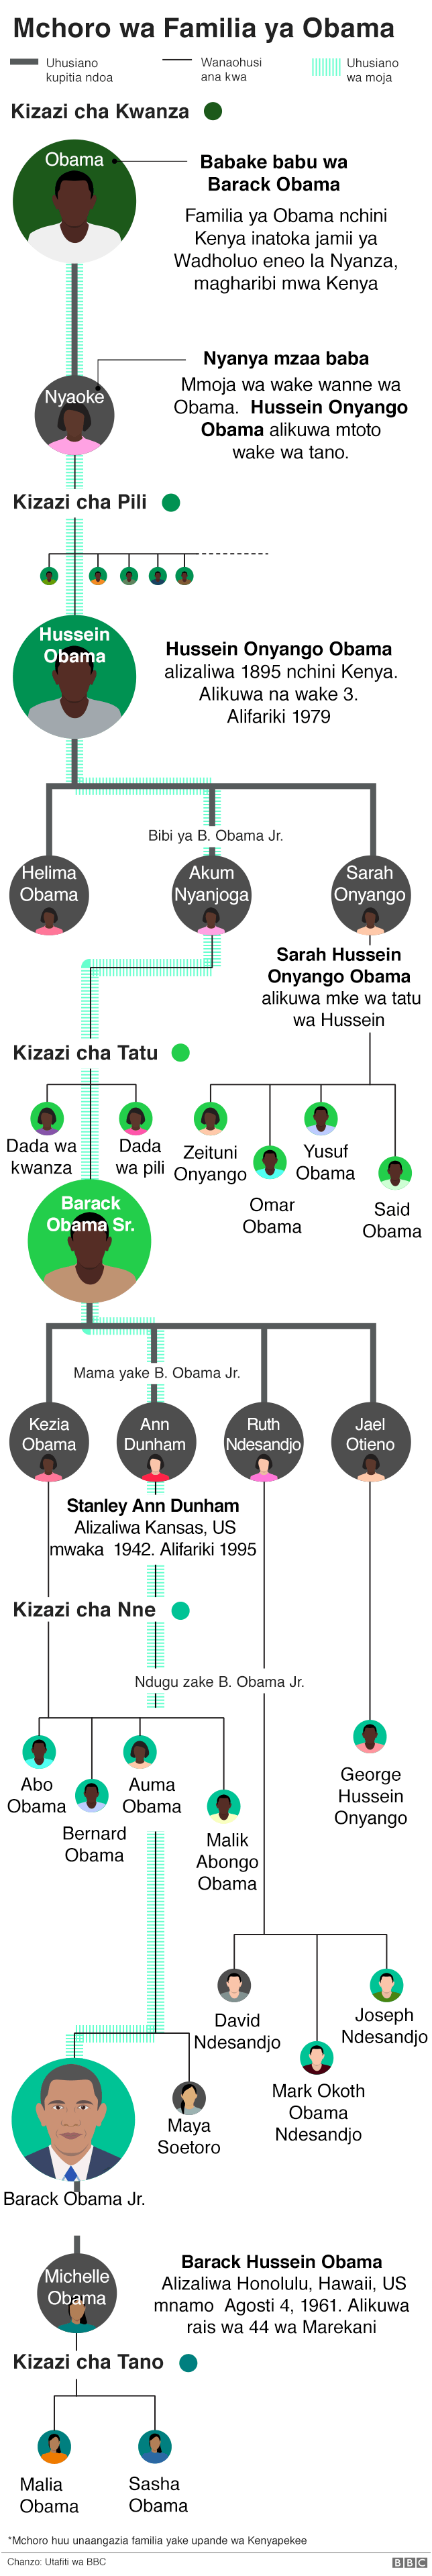 Mchoro wa familia ya Obama